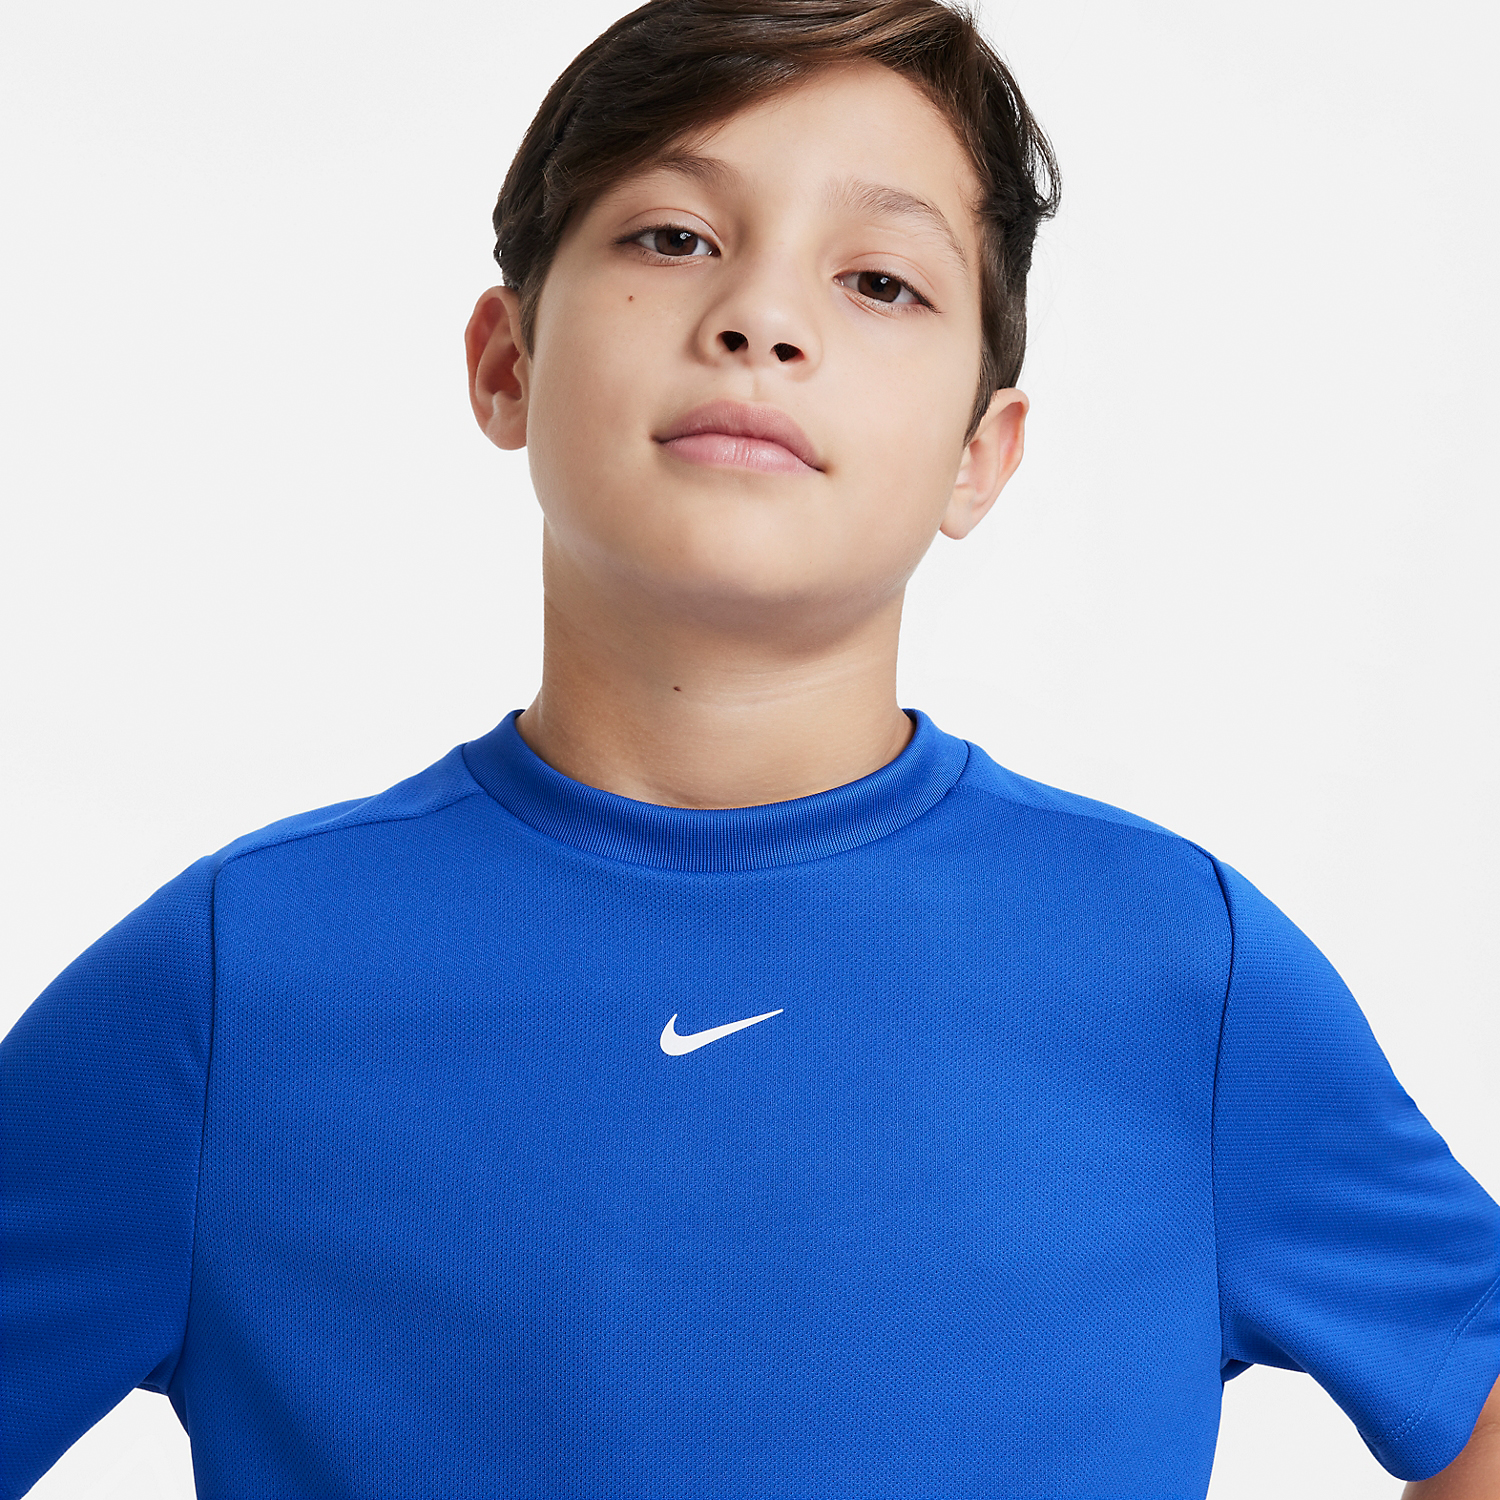 Nike Dri-FIT Multi T-Shirt Boy - Game Royal/White